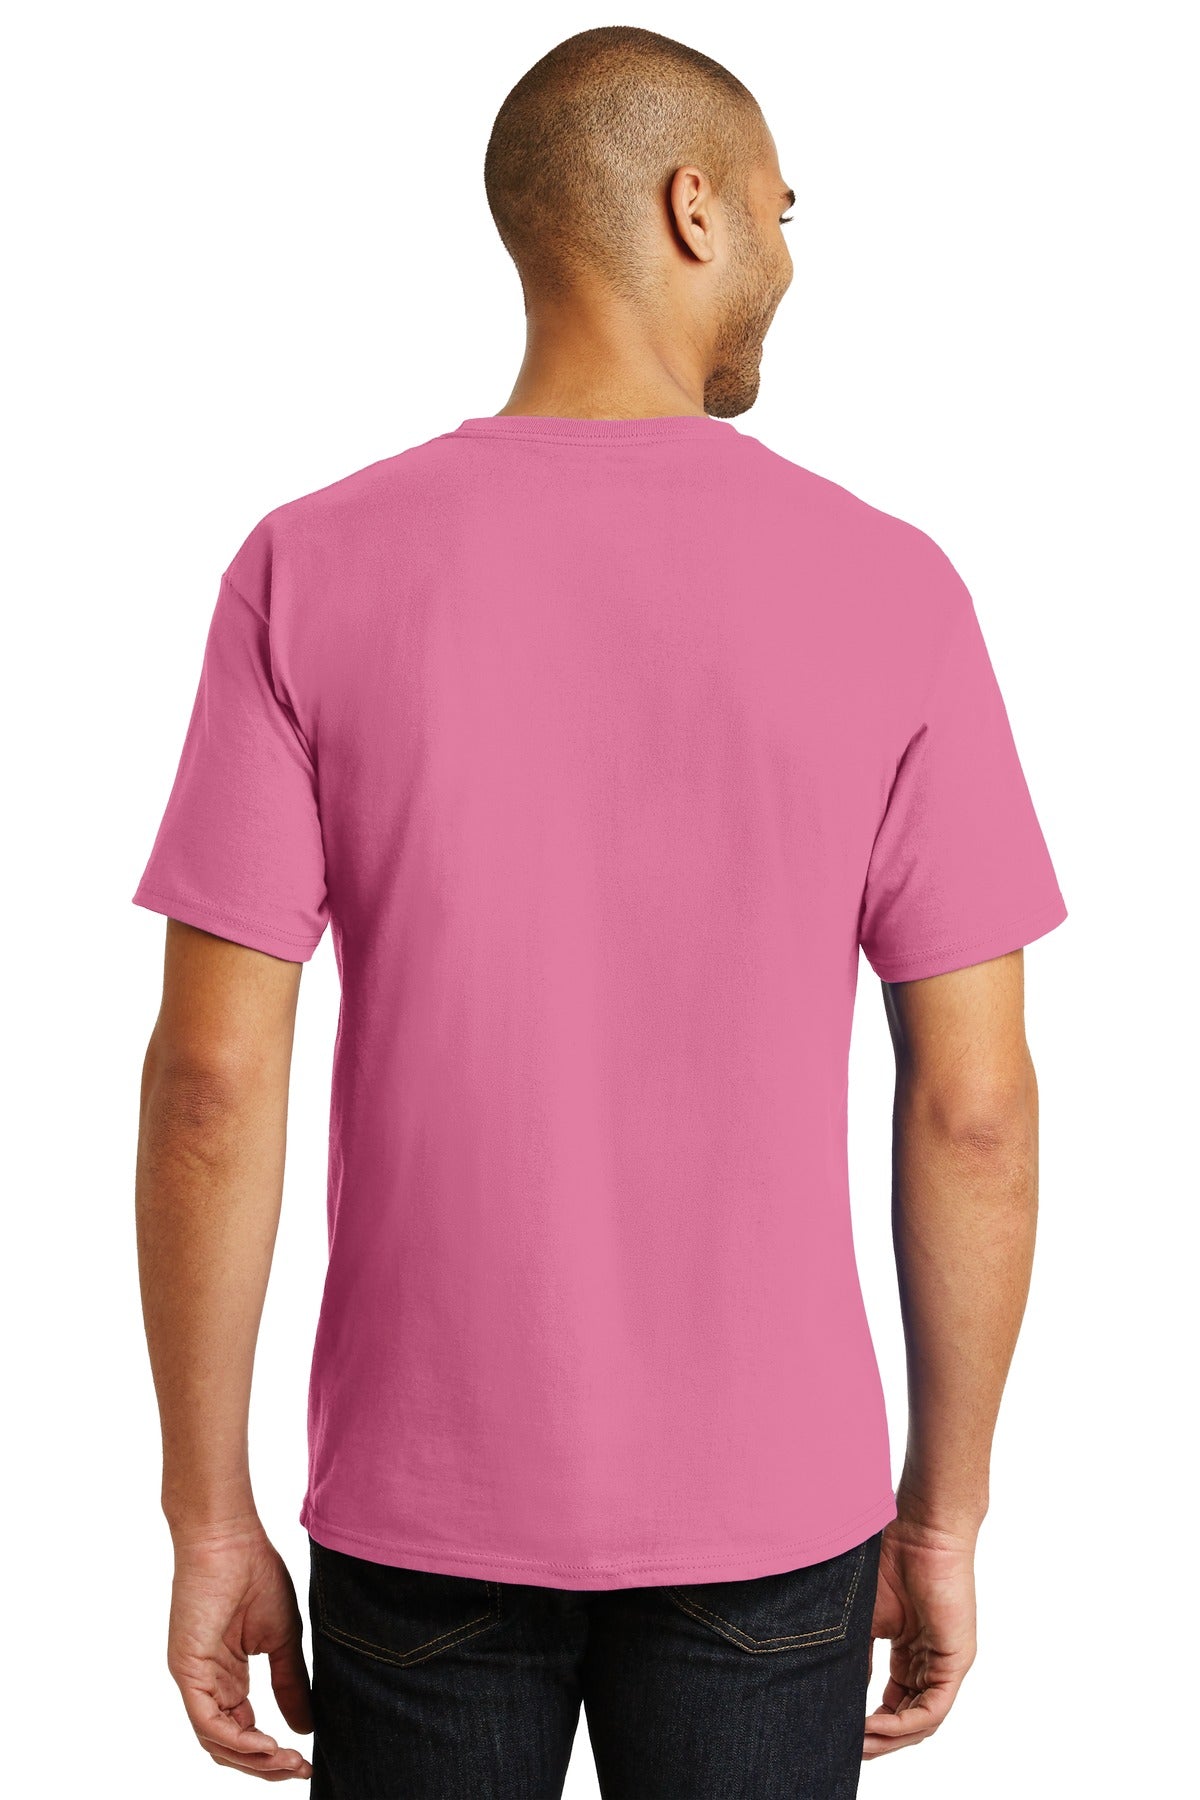 Hanes® - Authentic 100% Cotton T-Shirt. 5250 [Pink] - DFW Impression